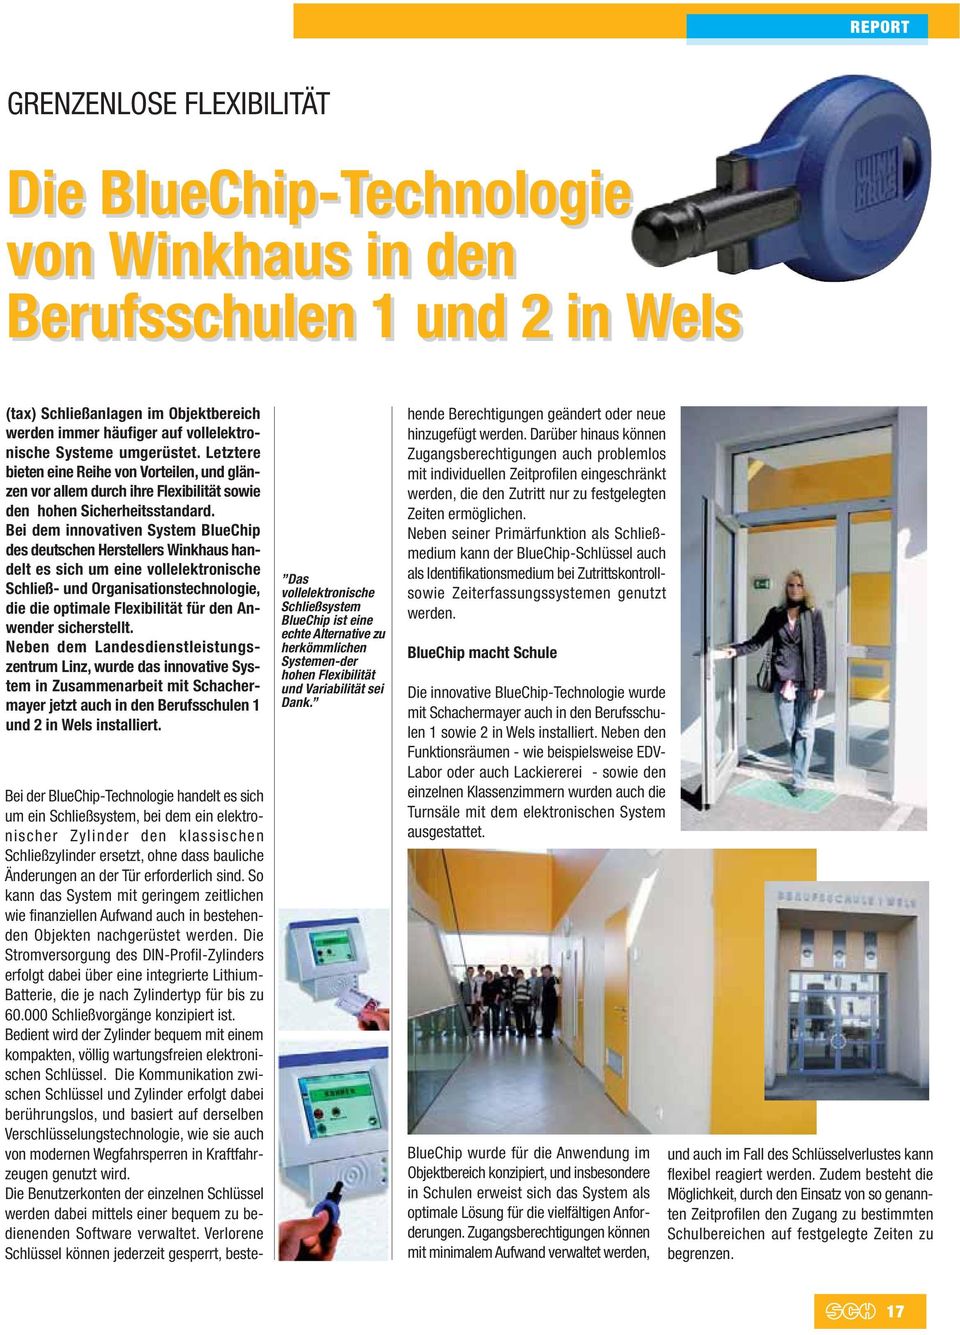 Bei dem innovativen System BlueChip des deutschen Herstellers Winkhaus handelt es sich um eine vollelektronische Schließ- und Organisationstechnologie, die die optimale Flexibilität für den Anwender